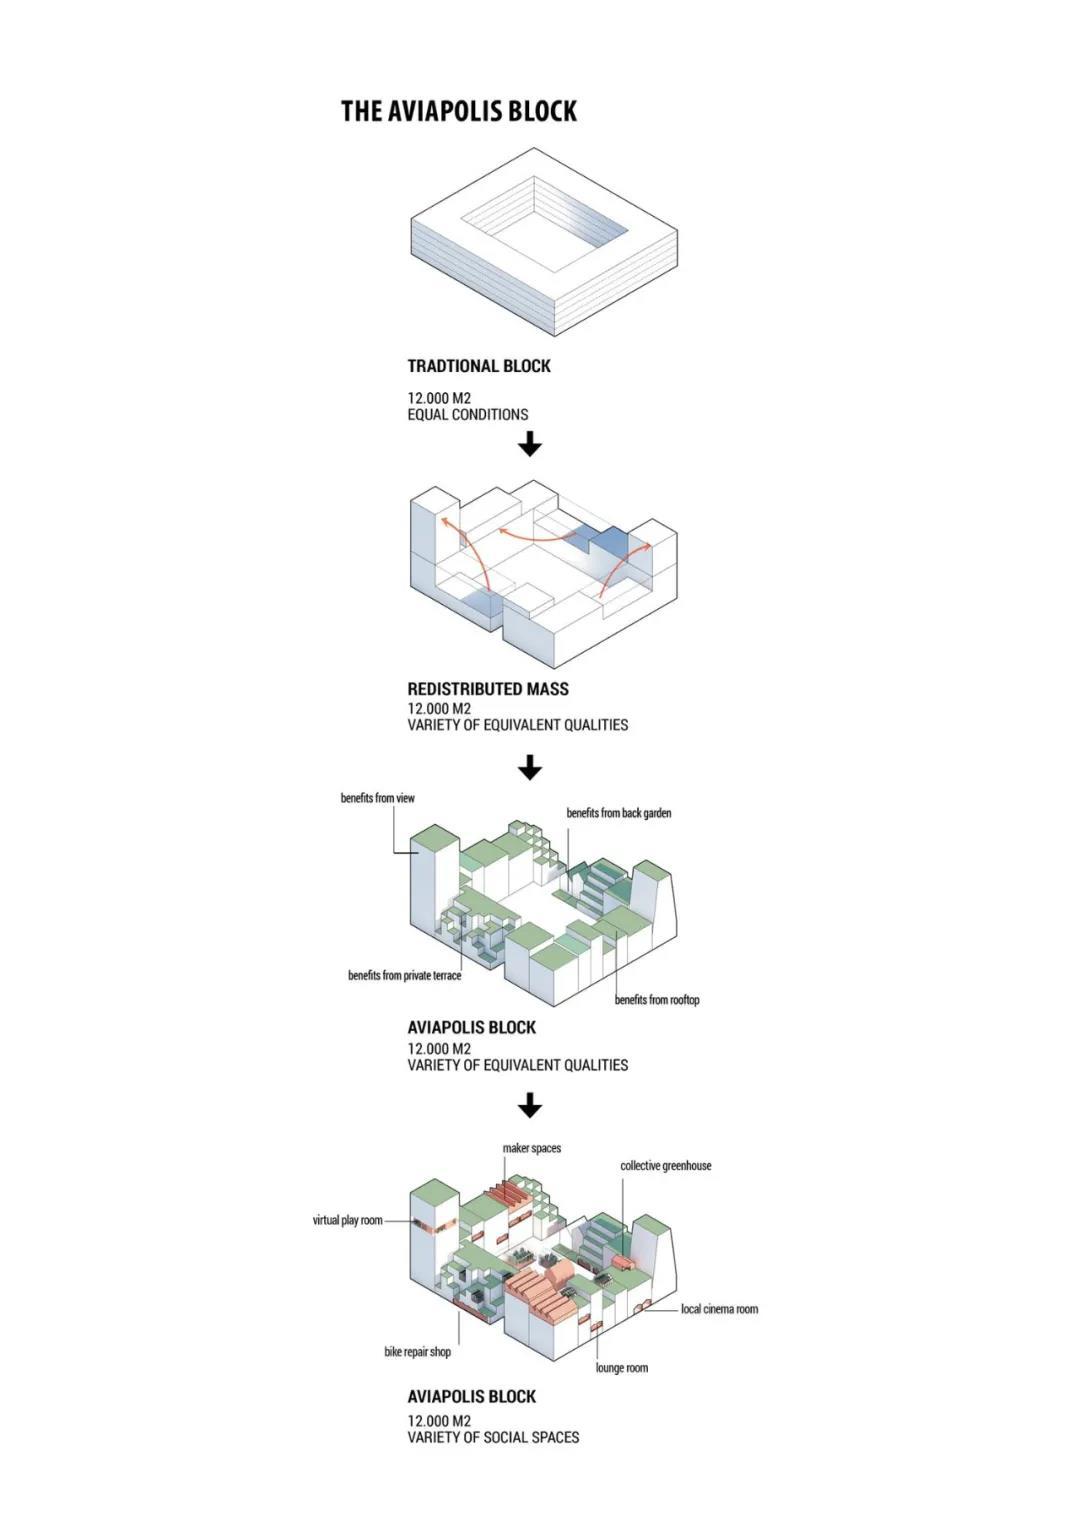 展示建筑空间形体的生成分析类轴测图主要用于方案构思和发展阶段